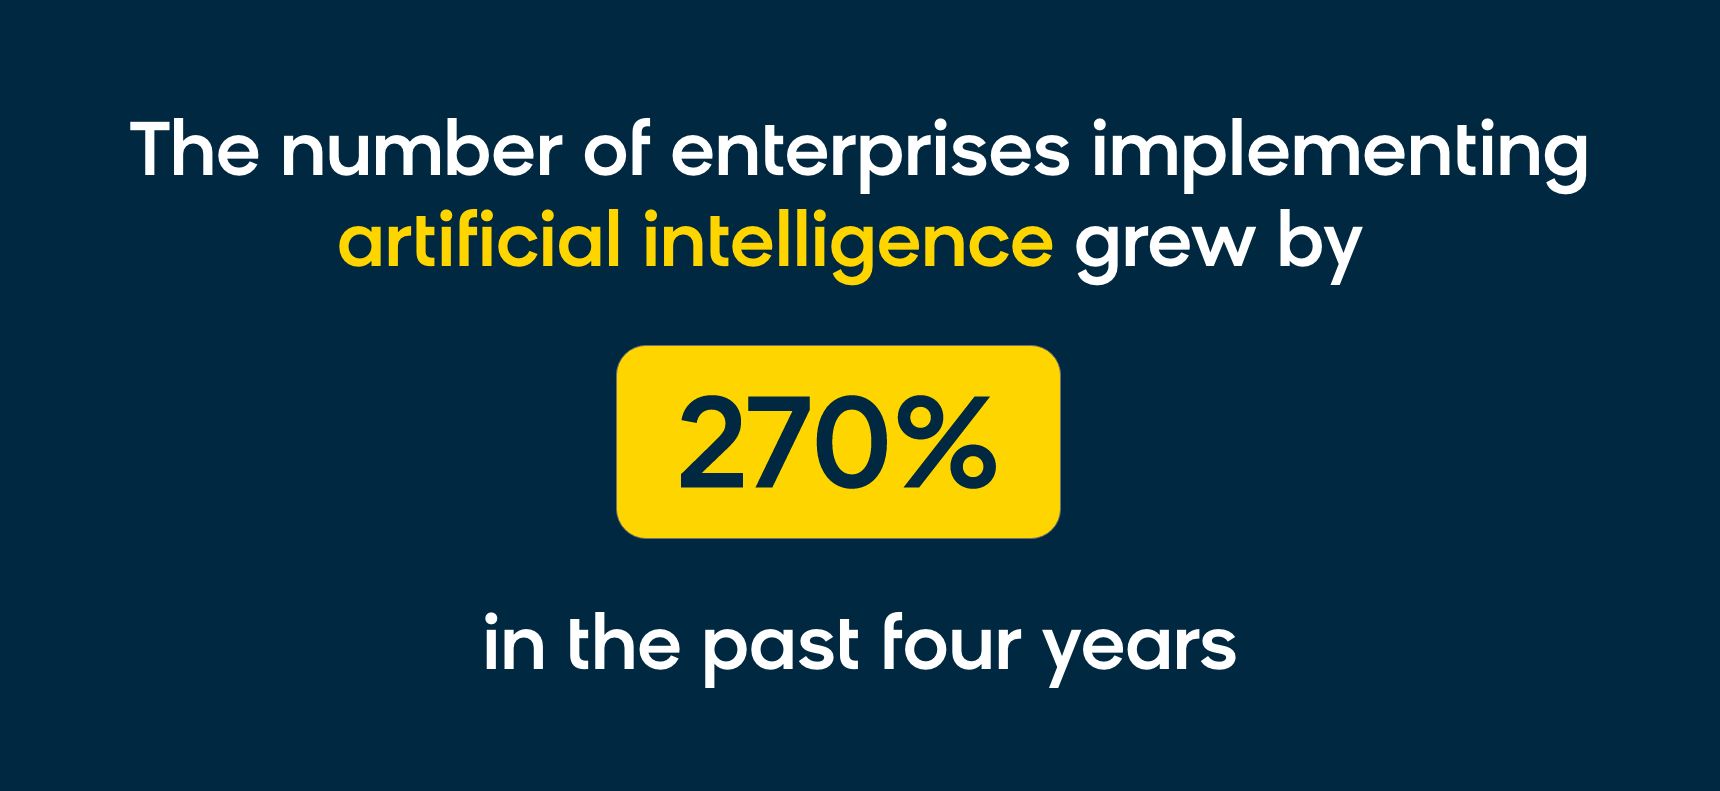 Les entreprises ayant opté pour des solutions d’IA sont 270 % plus nombreuses qu’il y a quatre ans.